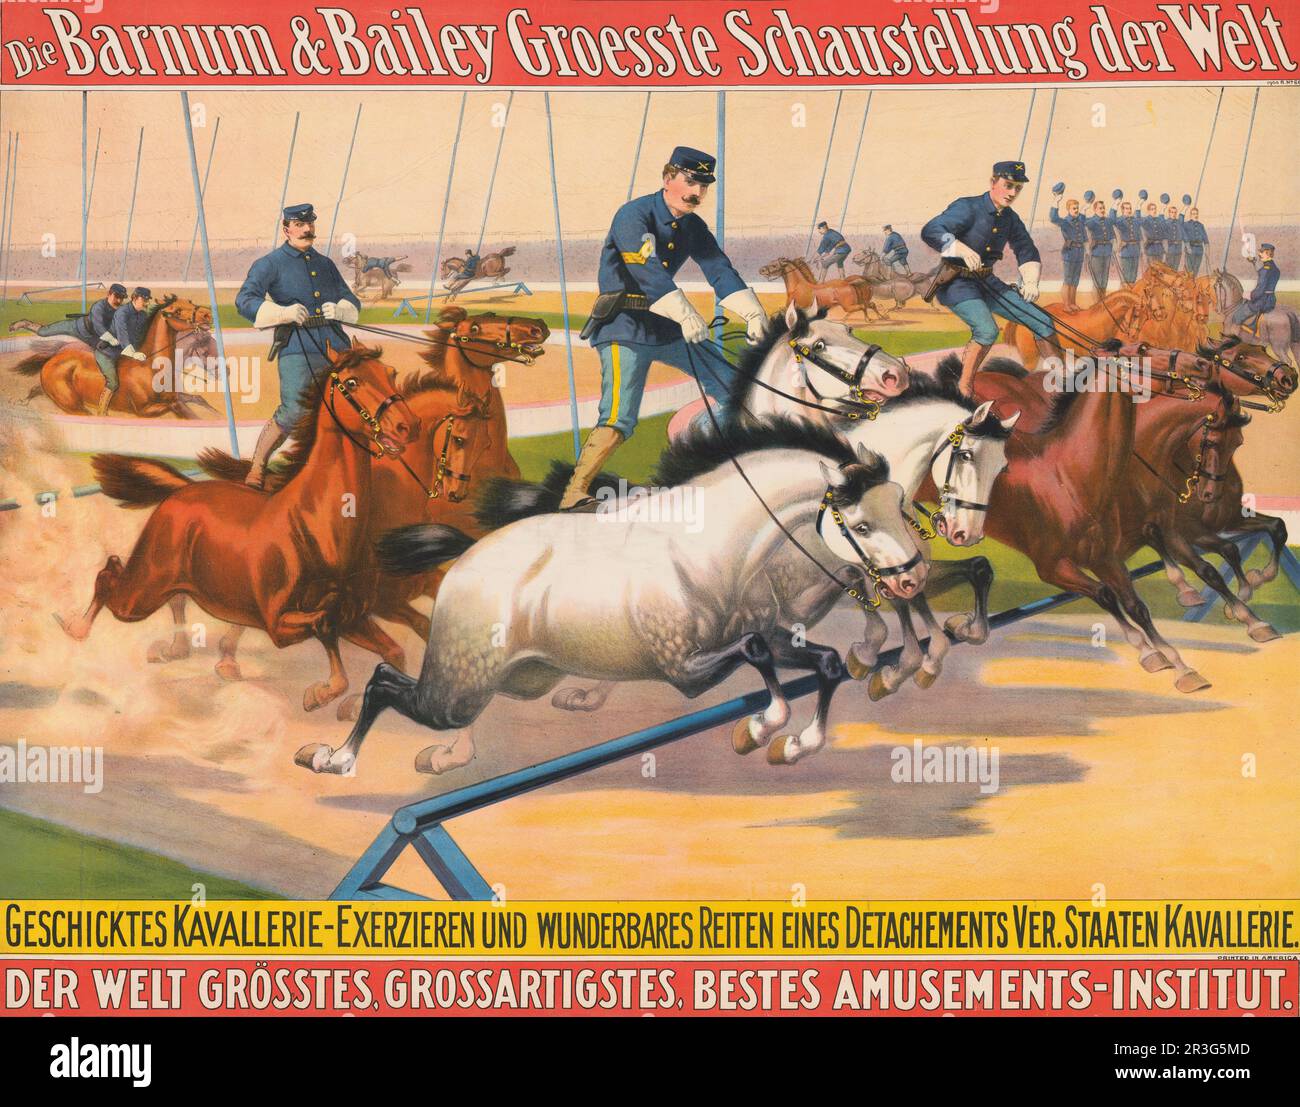 Klassisches deutsches Barnum & Bailey-Zirkusposter von Männern in Militäruniformen, die um eine Rennstrecke Rennen, ca. 1900. Stockfoto